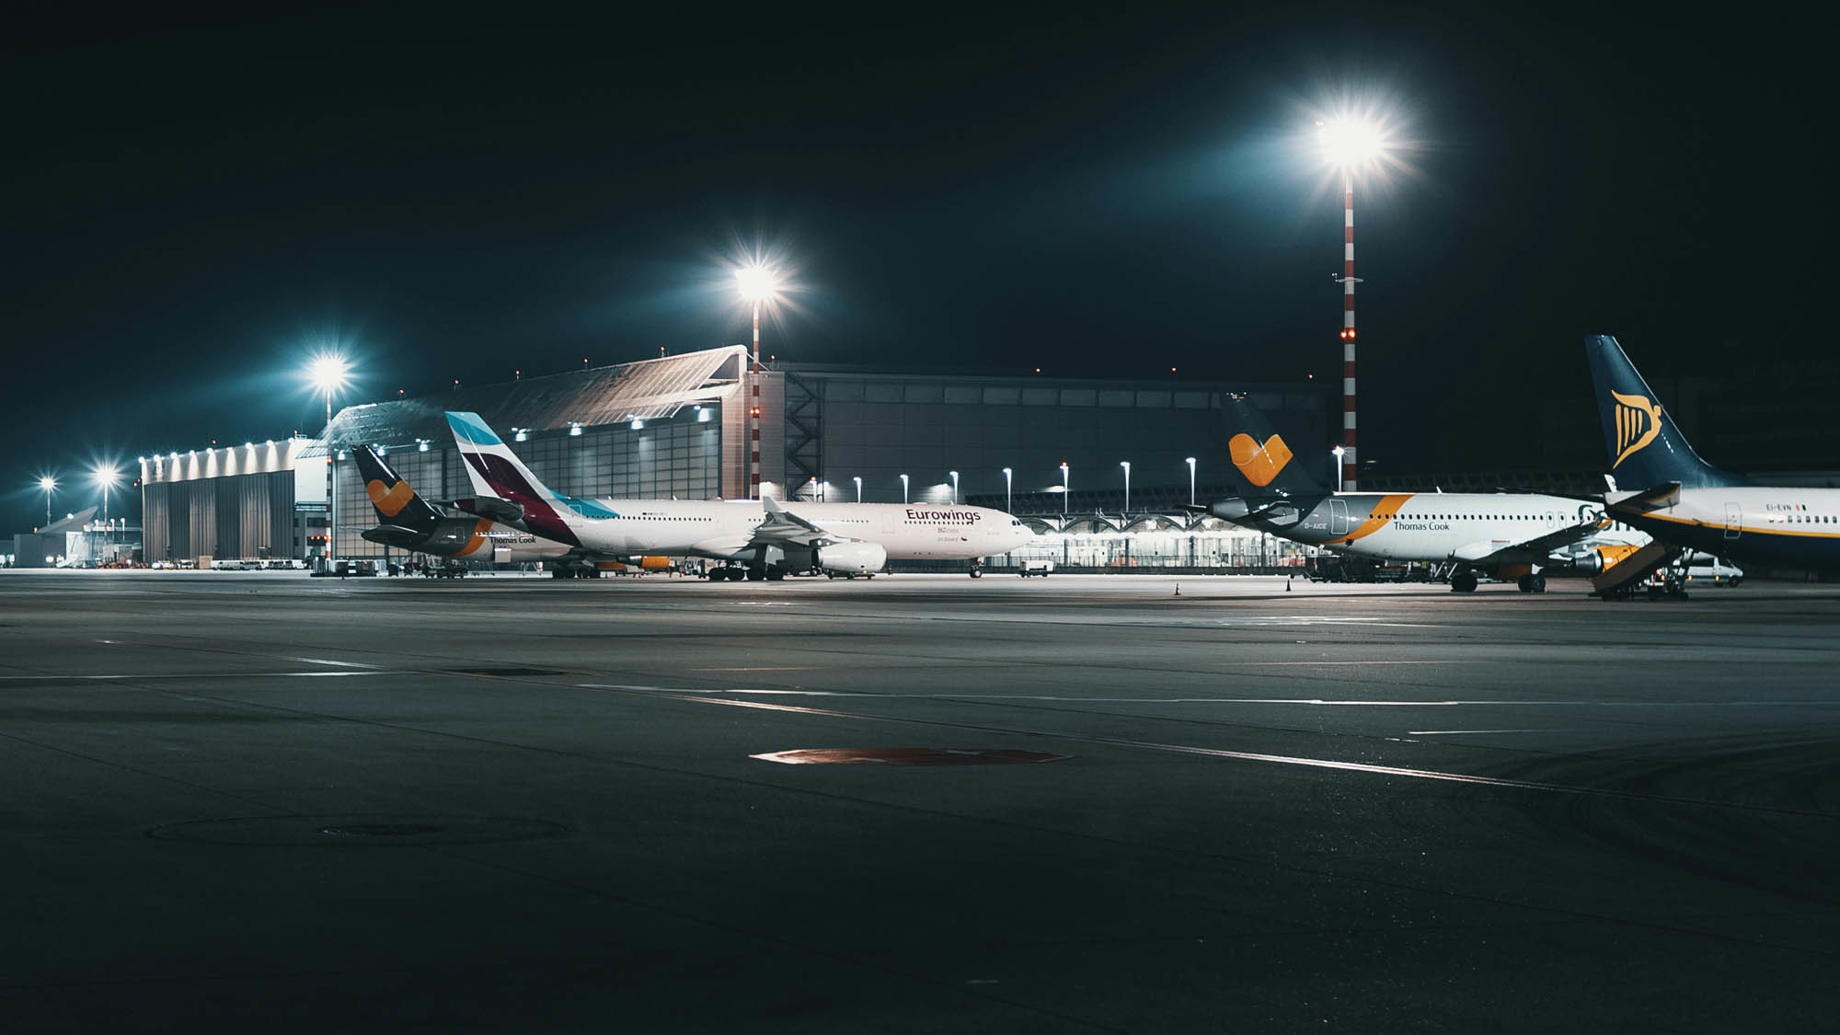 Planes at an airport at night